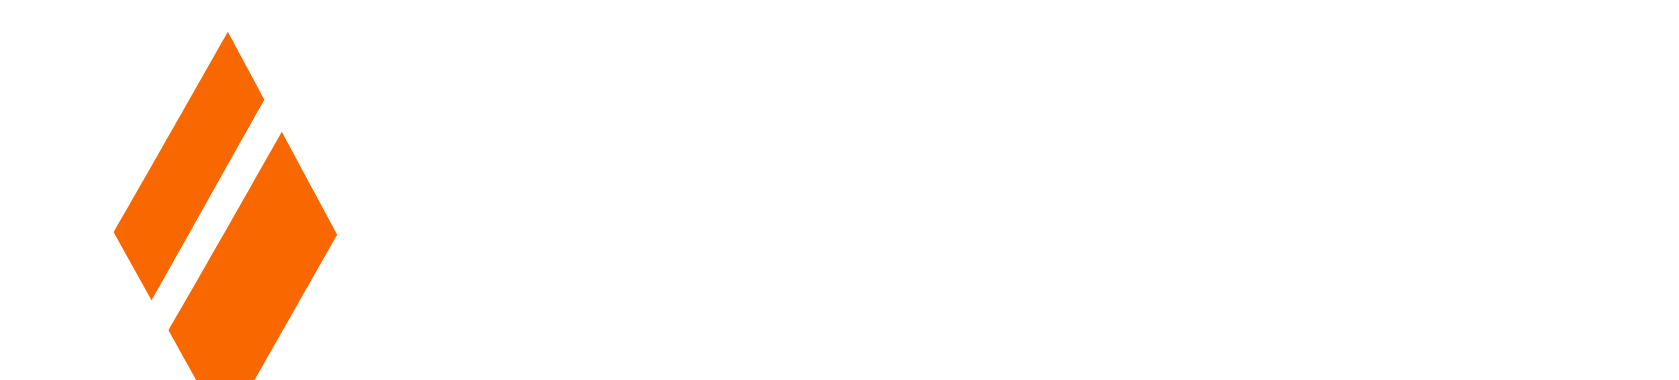 ForgeRock logo large for dark backgrounds (transparent PNG)